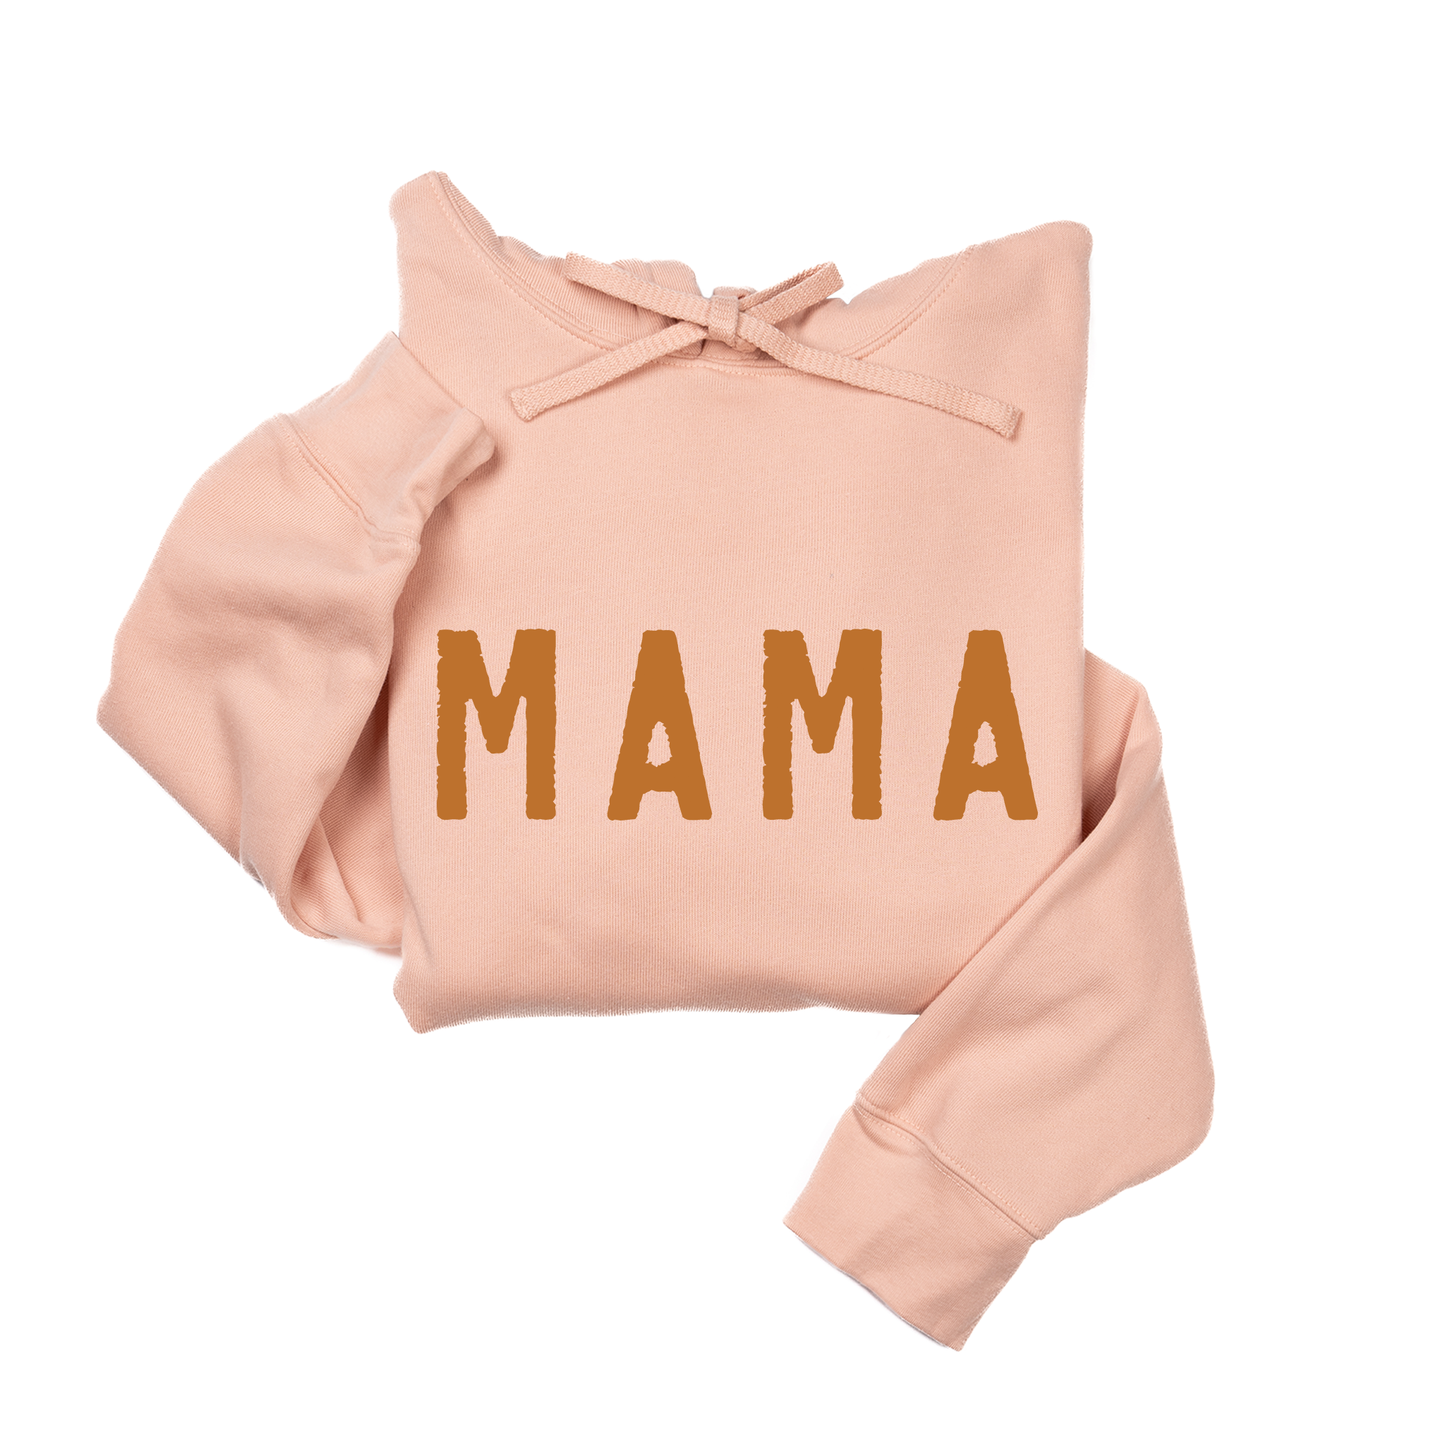 Mama (Rough, Camel) - Hoodie (Peach)